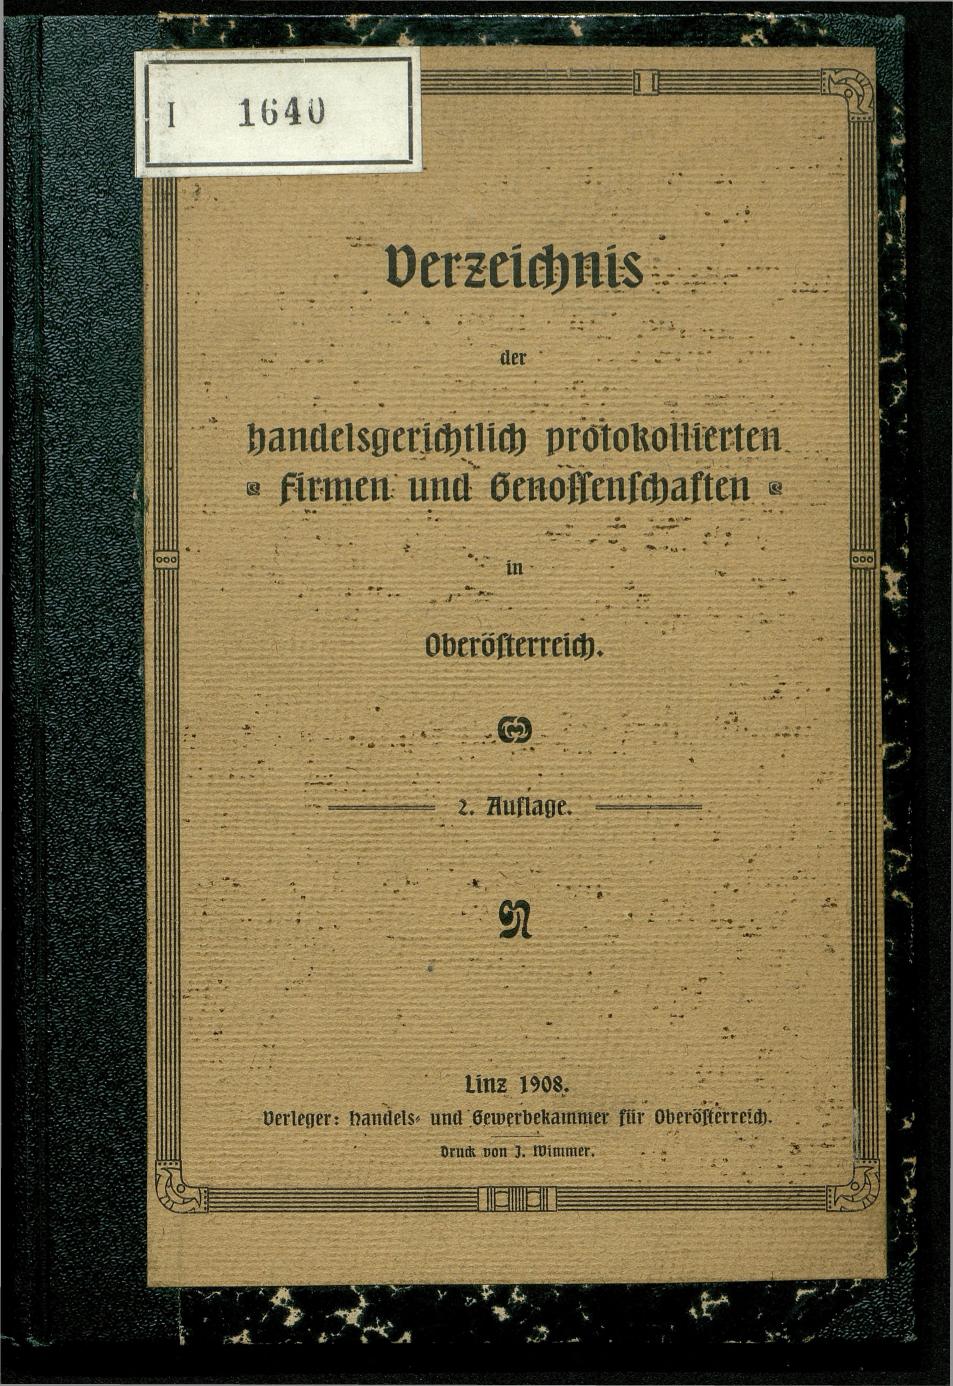 Verzeichnis der protokollierten Firmen und Genossenschaften in Oberösterreich 1908 - Seite 1